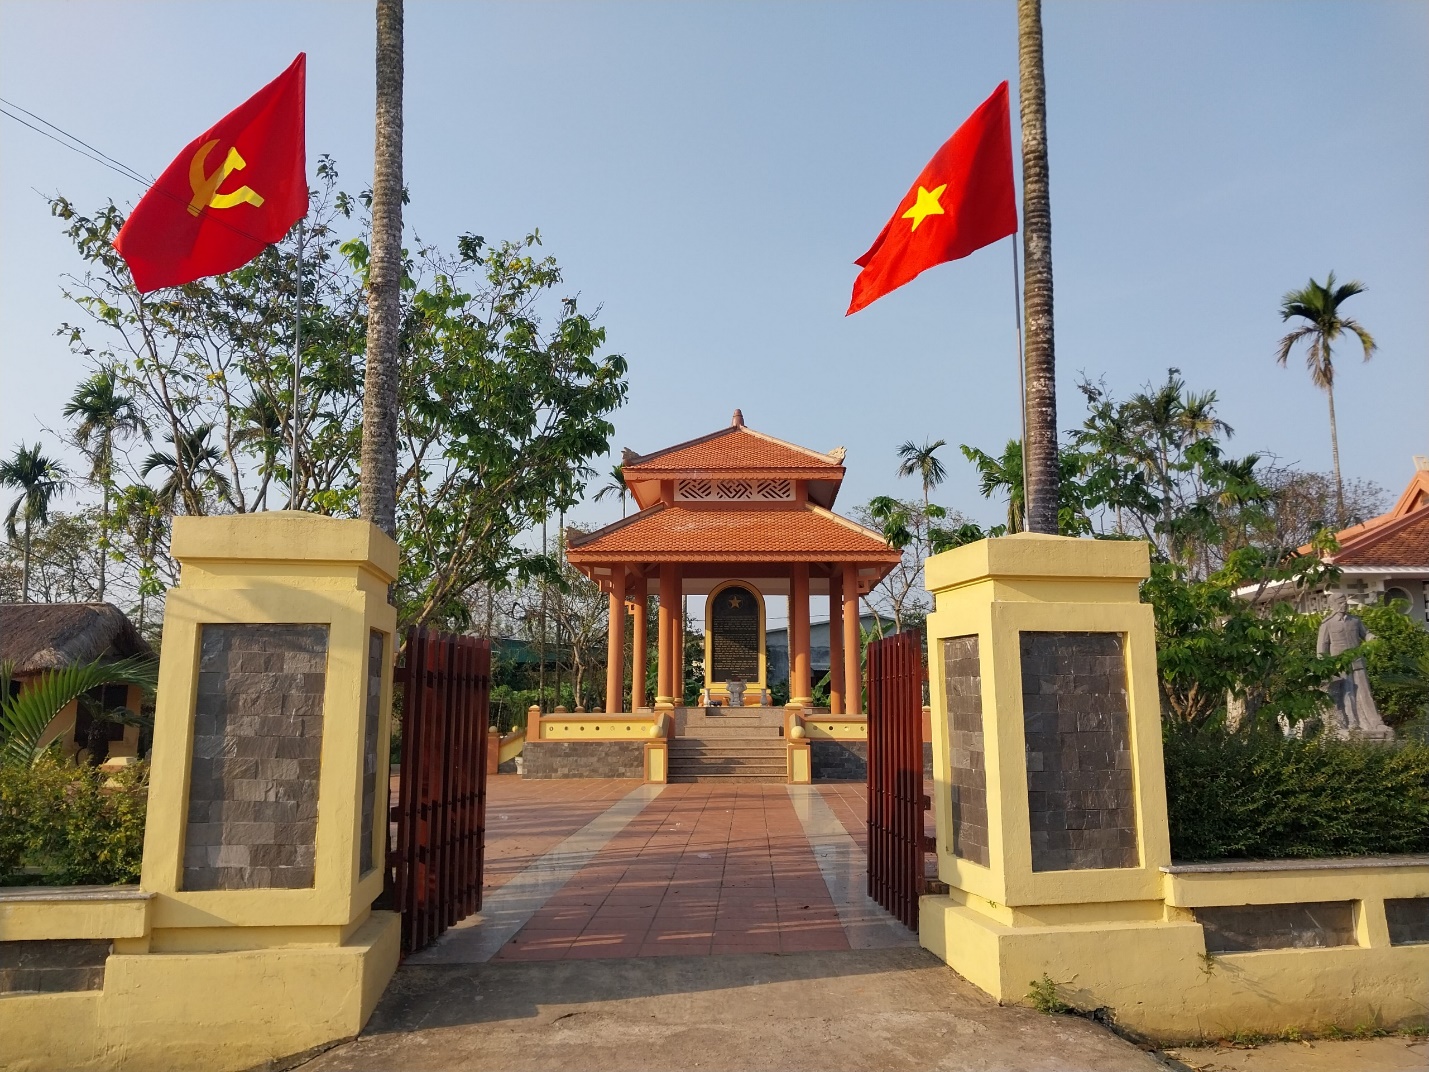 Dừng chân bên Khu lưu niệm Đại tướng Nguyễn Chí Thanh - 5